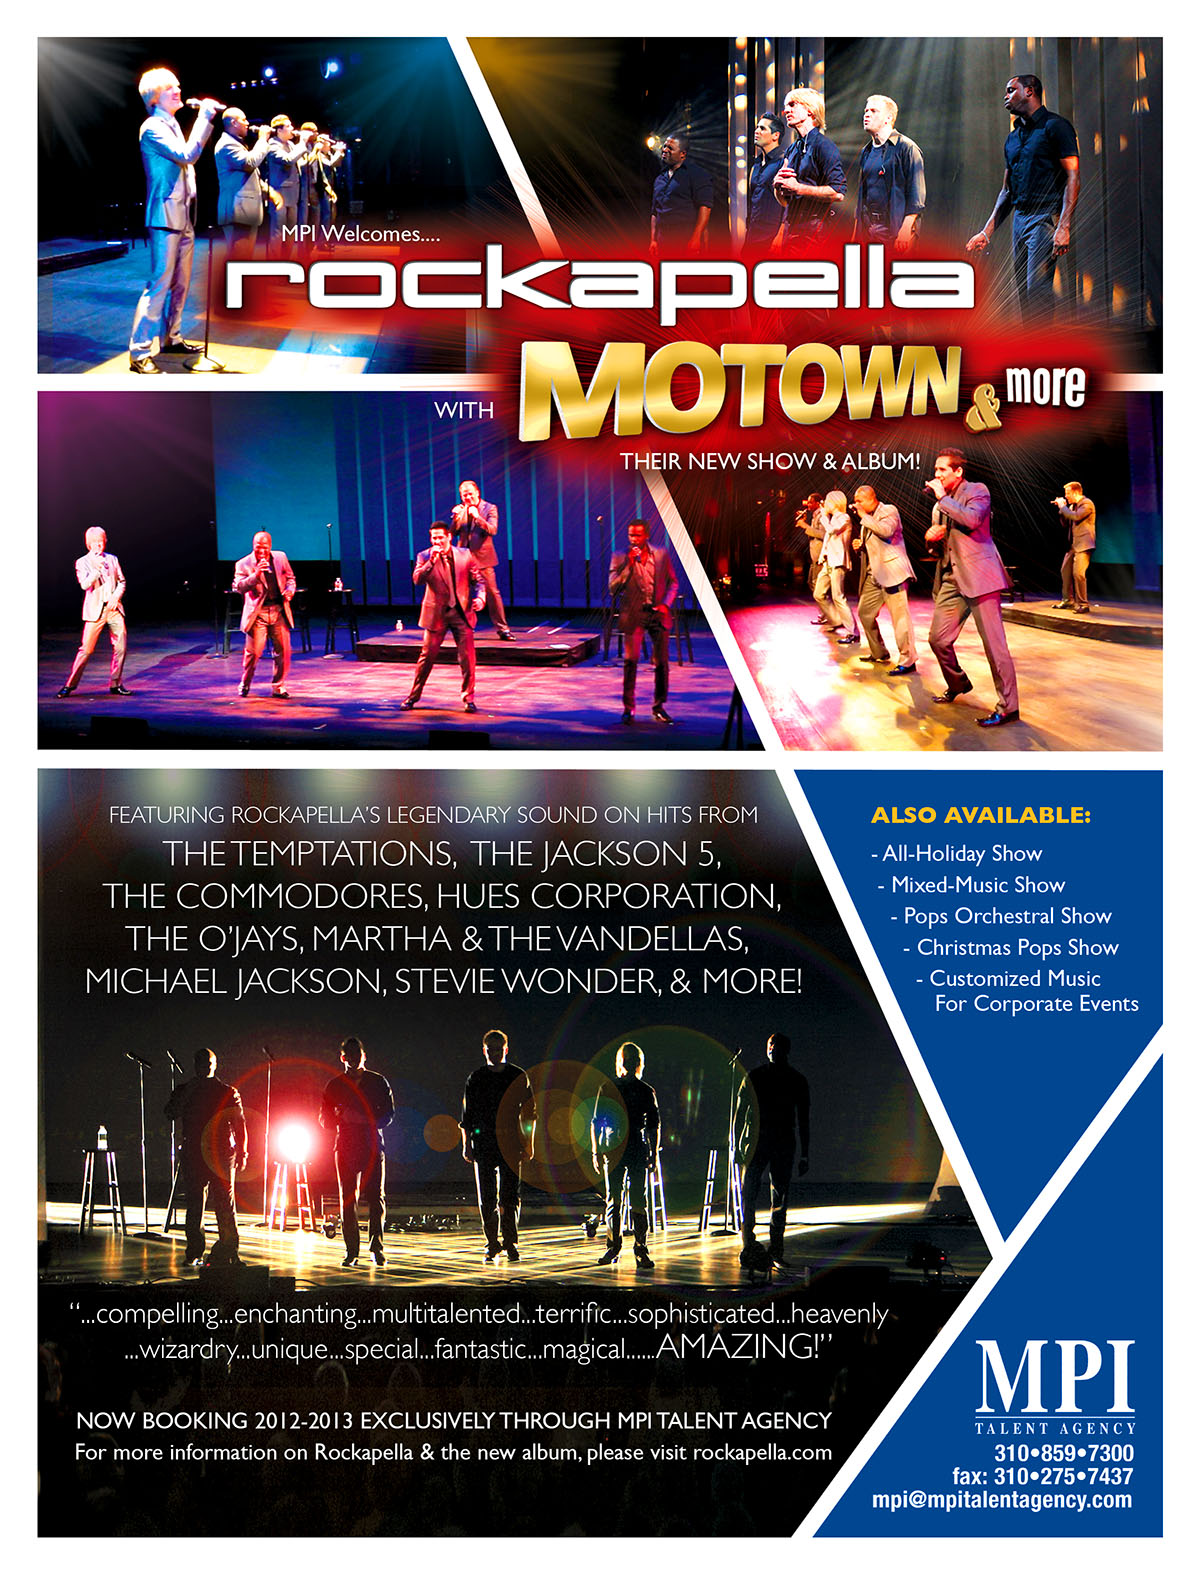 Rockapella: Motown & More tour